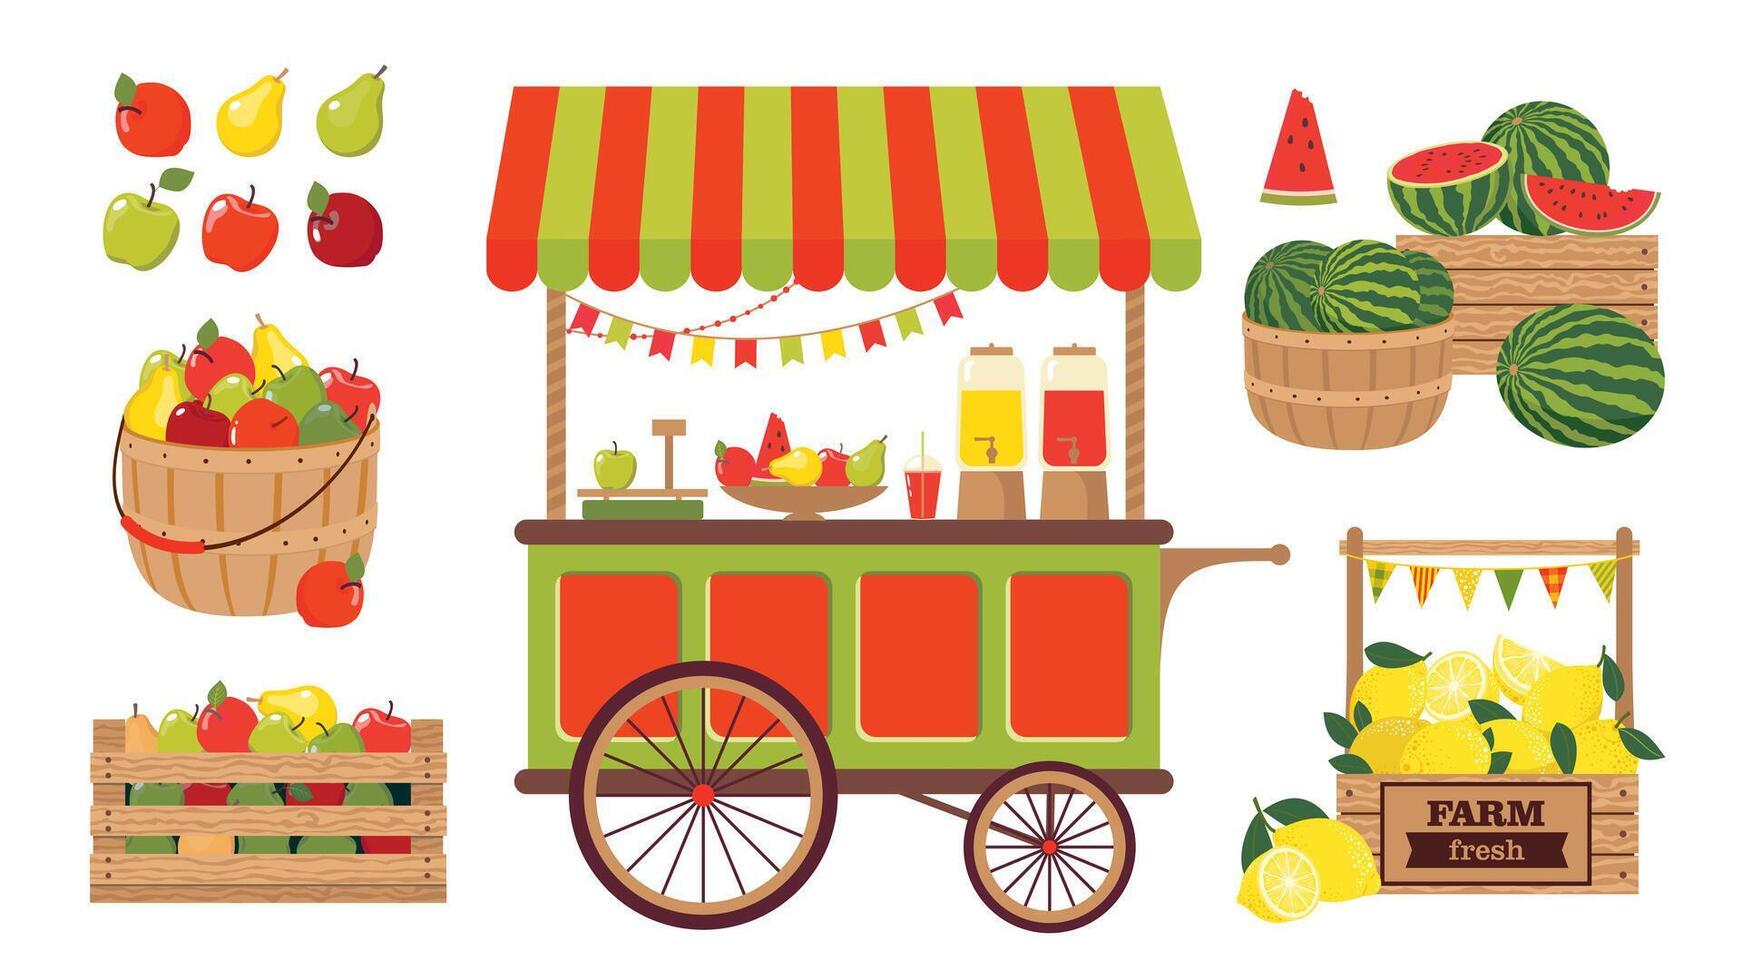 een reeks van illustraties van boerderij groenten, fruit en een straat boodschappen doen kar. een boer kraam met lokaal voedsel. watermeloenen, appels, citroenen in de assortiment. vector clip art.